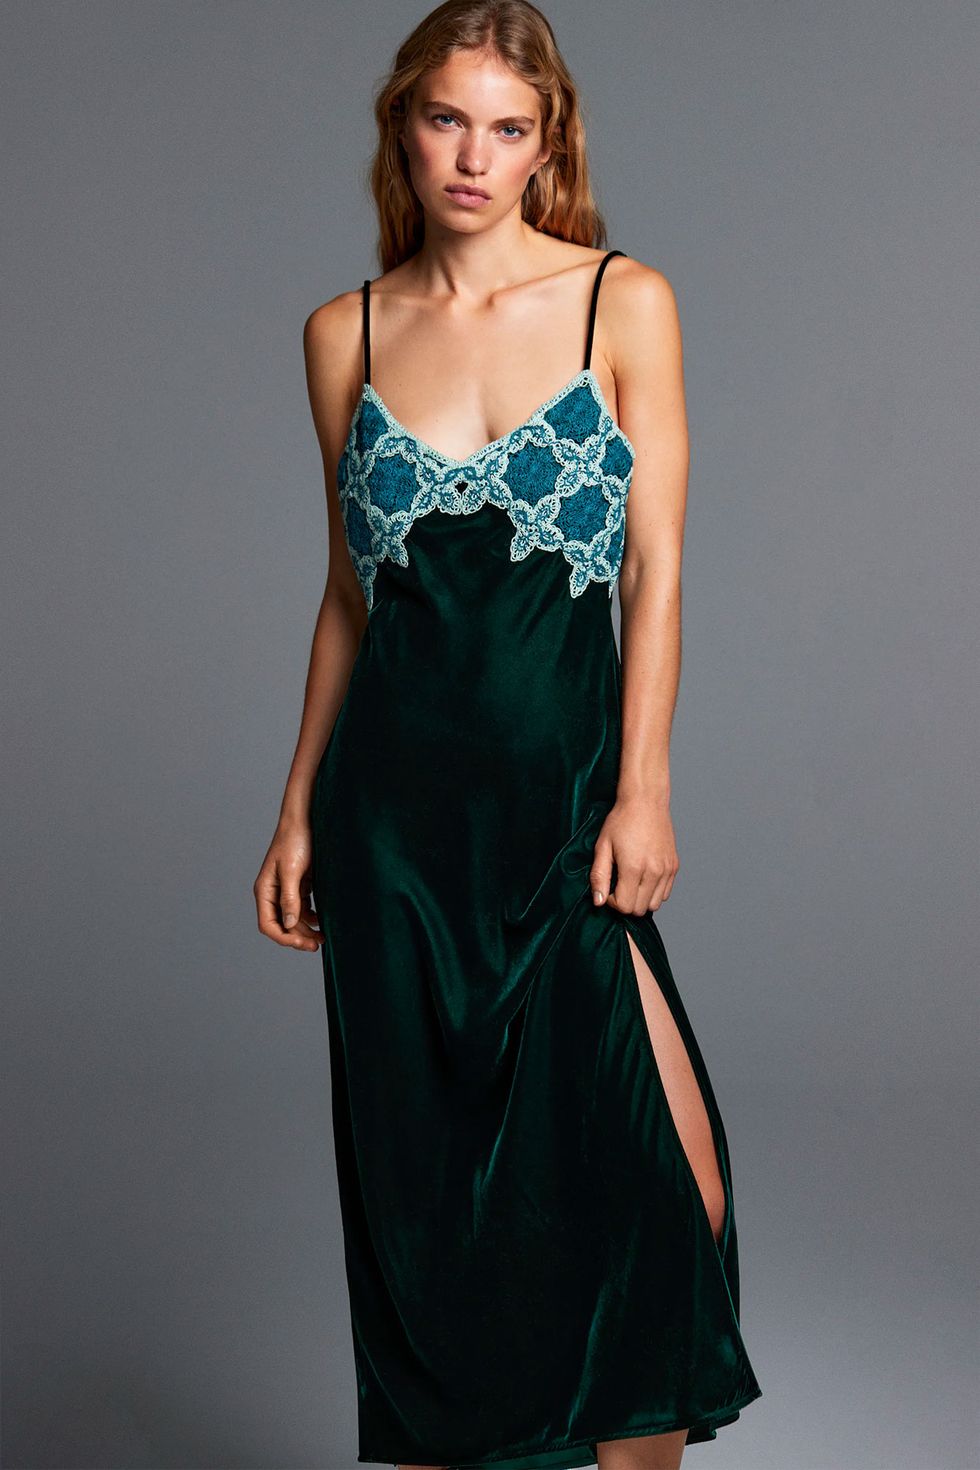 Terciopelo verde, midi y crochet: vestido Zara ideal